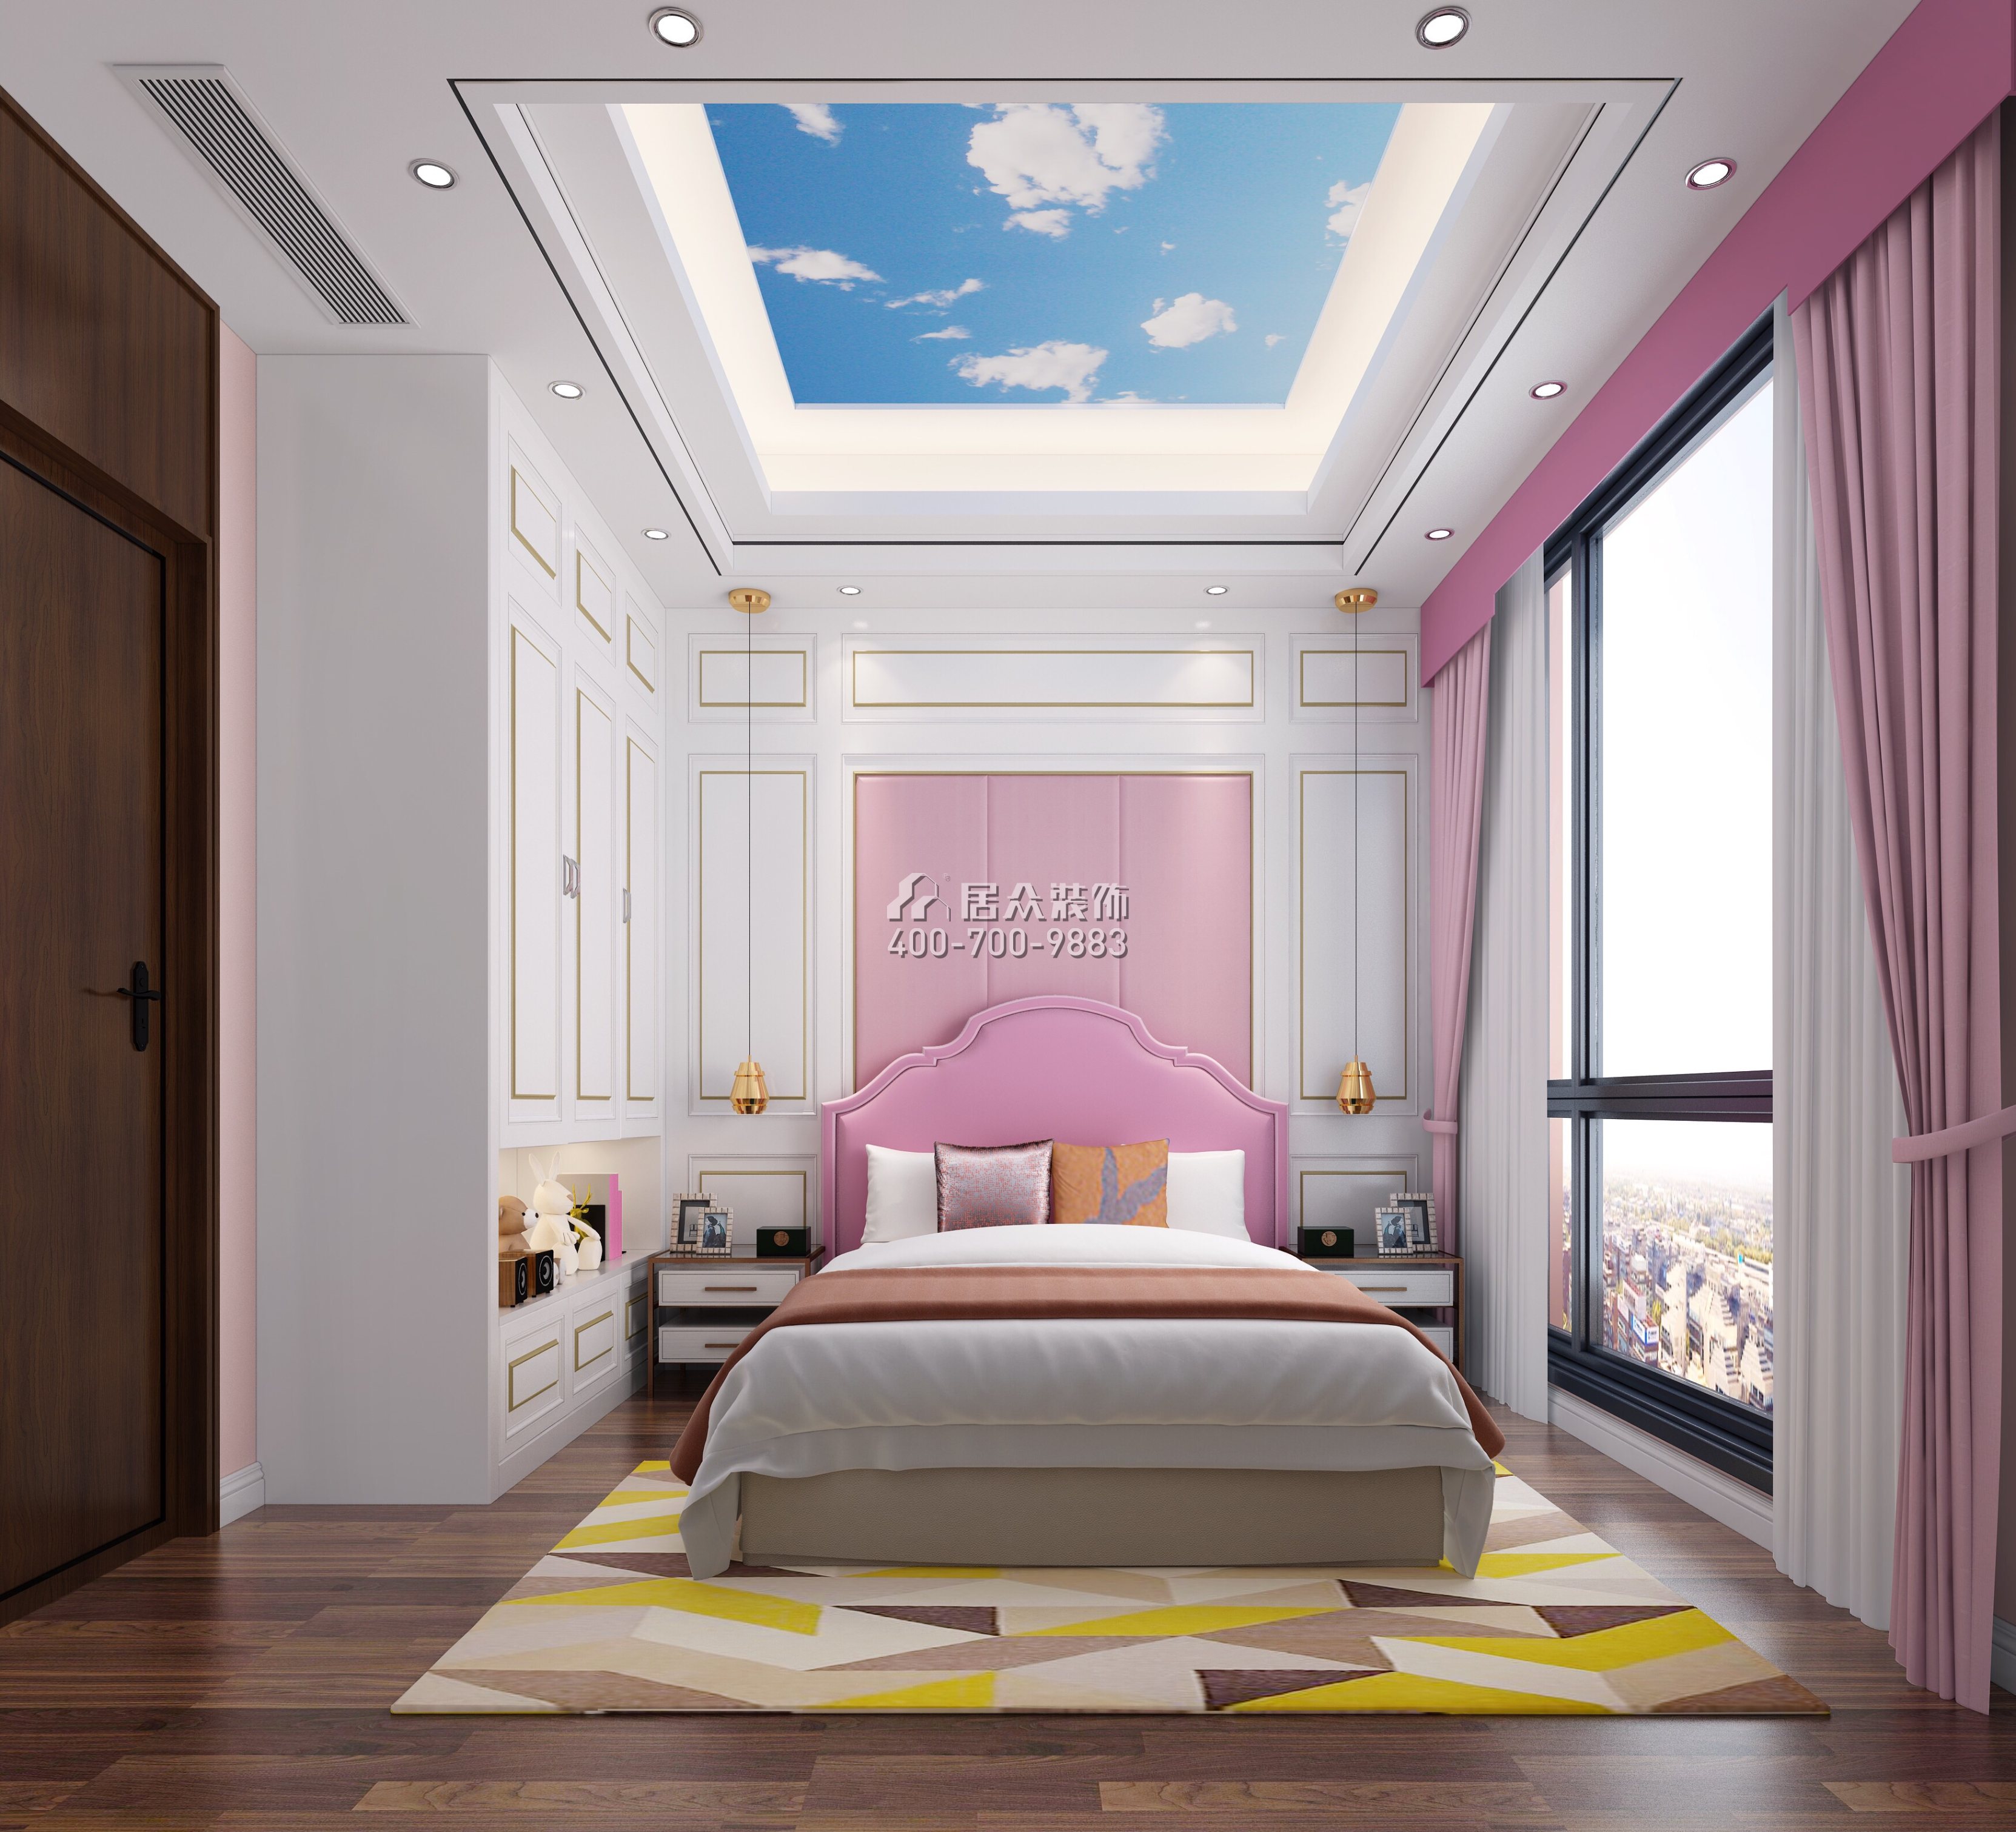 中信领航一期160平方米中式风格平层户型卧室装修效果图